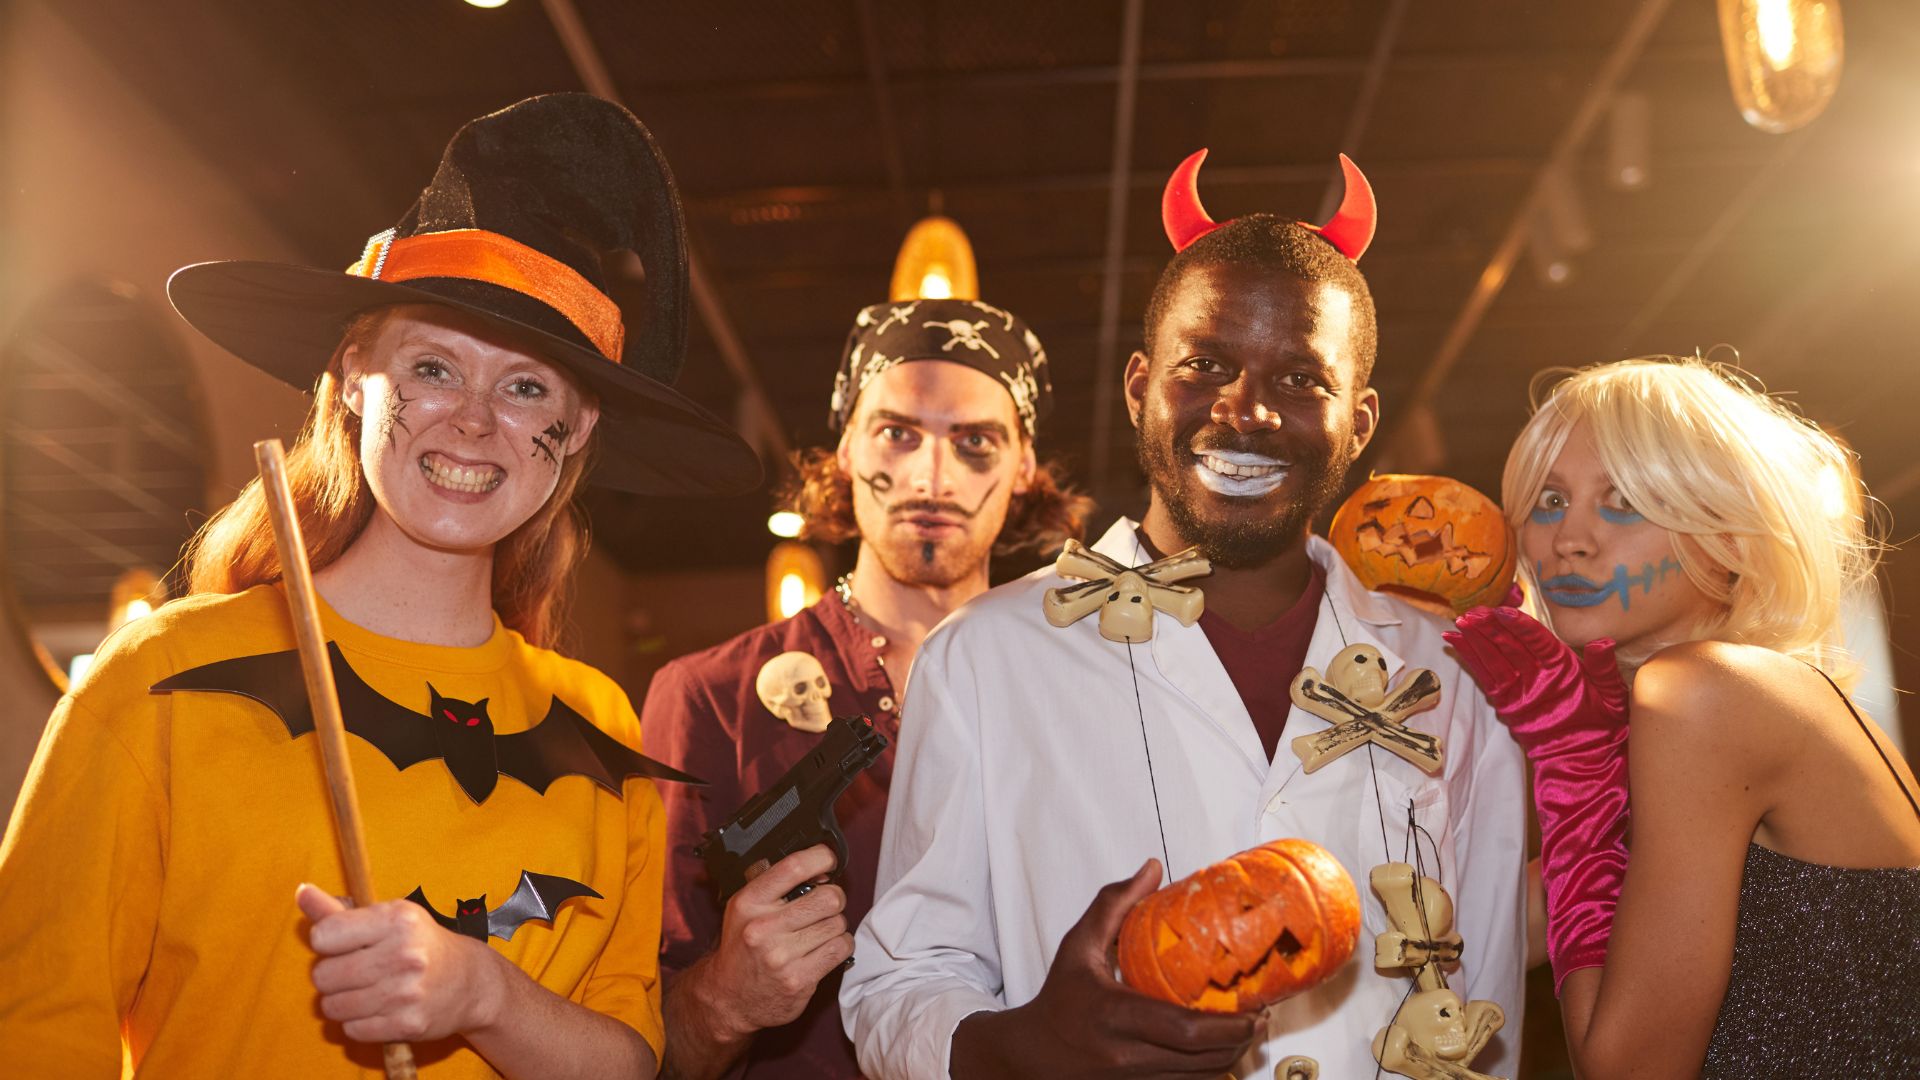 Imagem com 4 pessoas, dois homens e duas mulheres fantasiados para o Halloween.